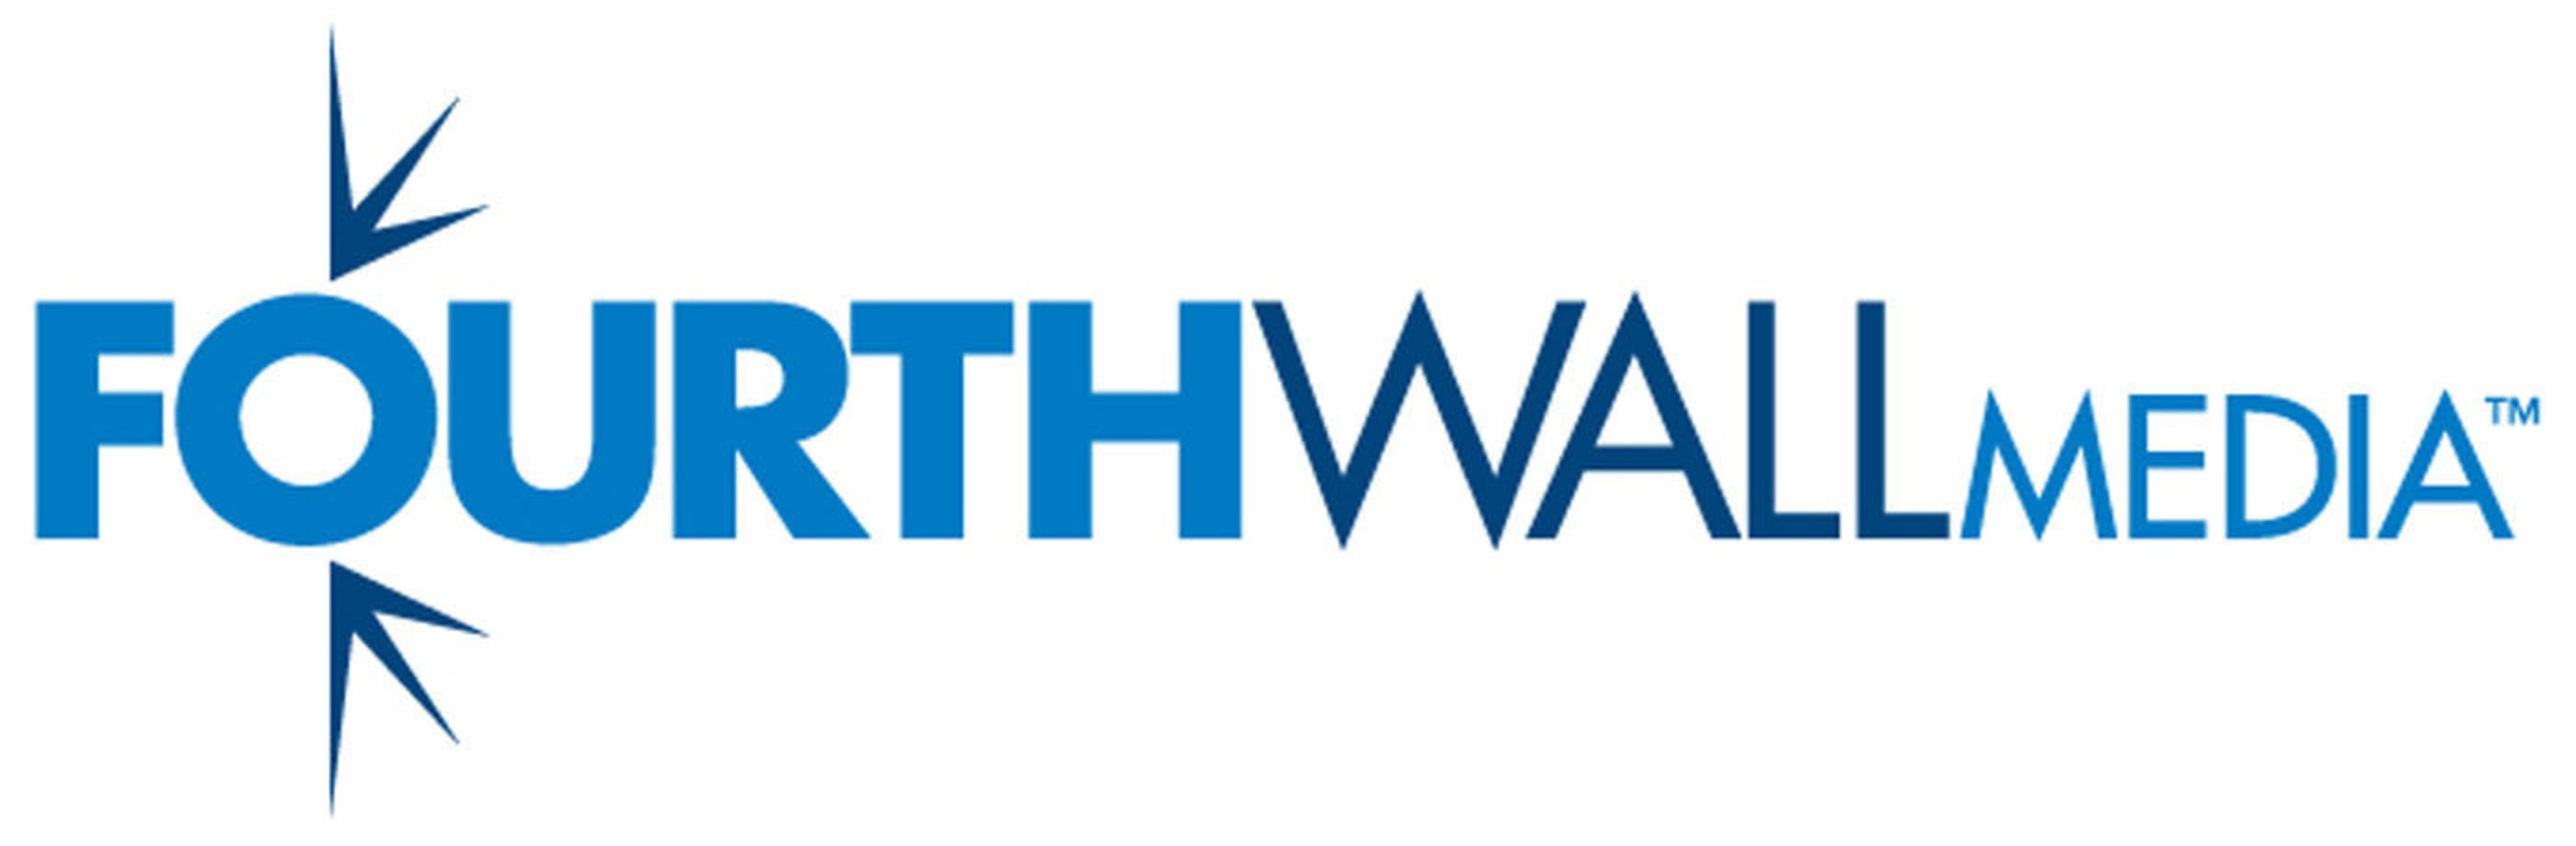 FourthWall Media Logo.